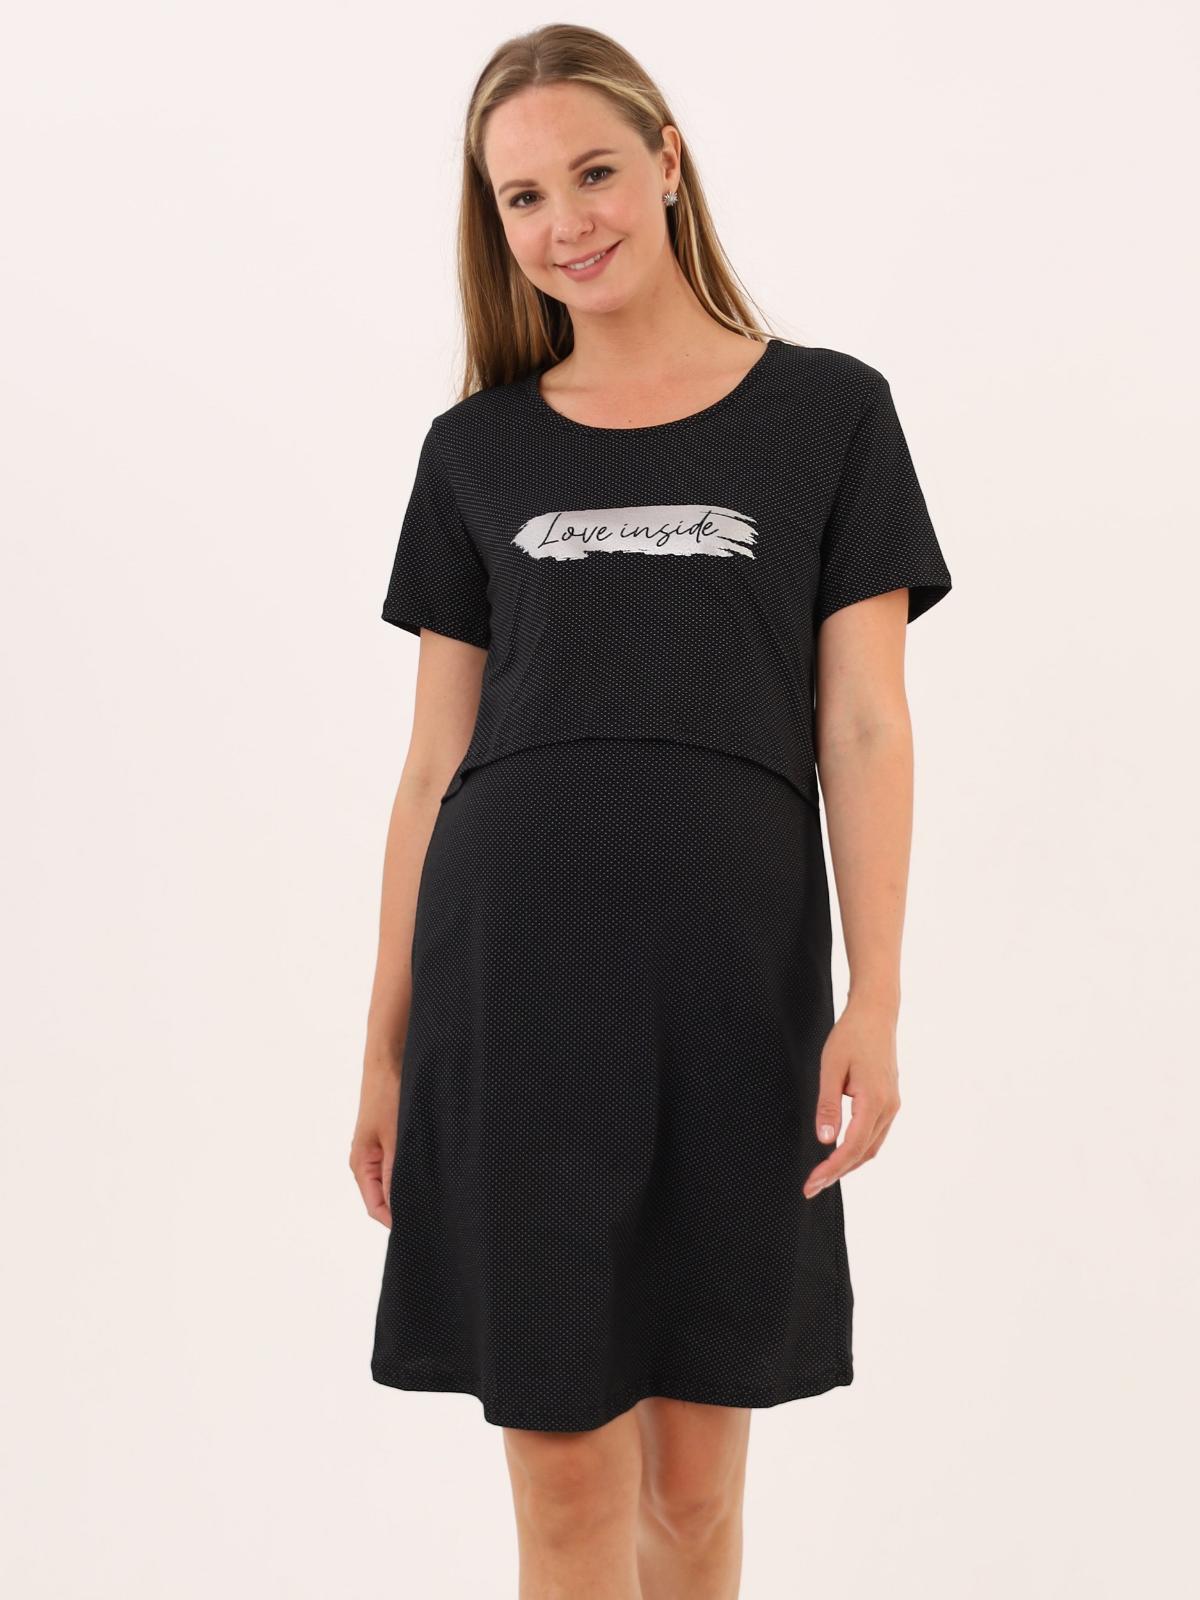 Сорочка для беременных и кормящих (домашнее платье) арт. 360505 черная